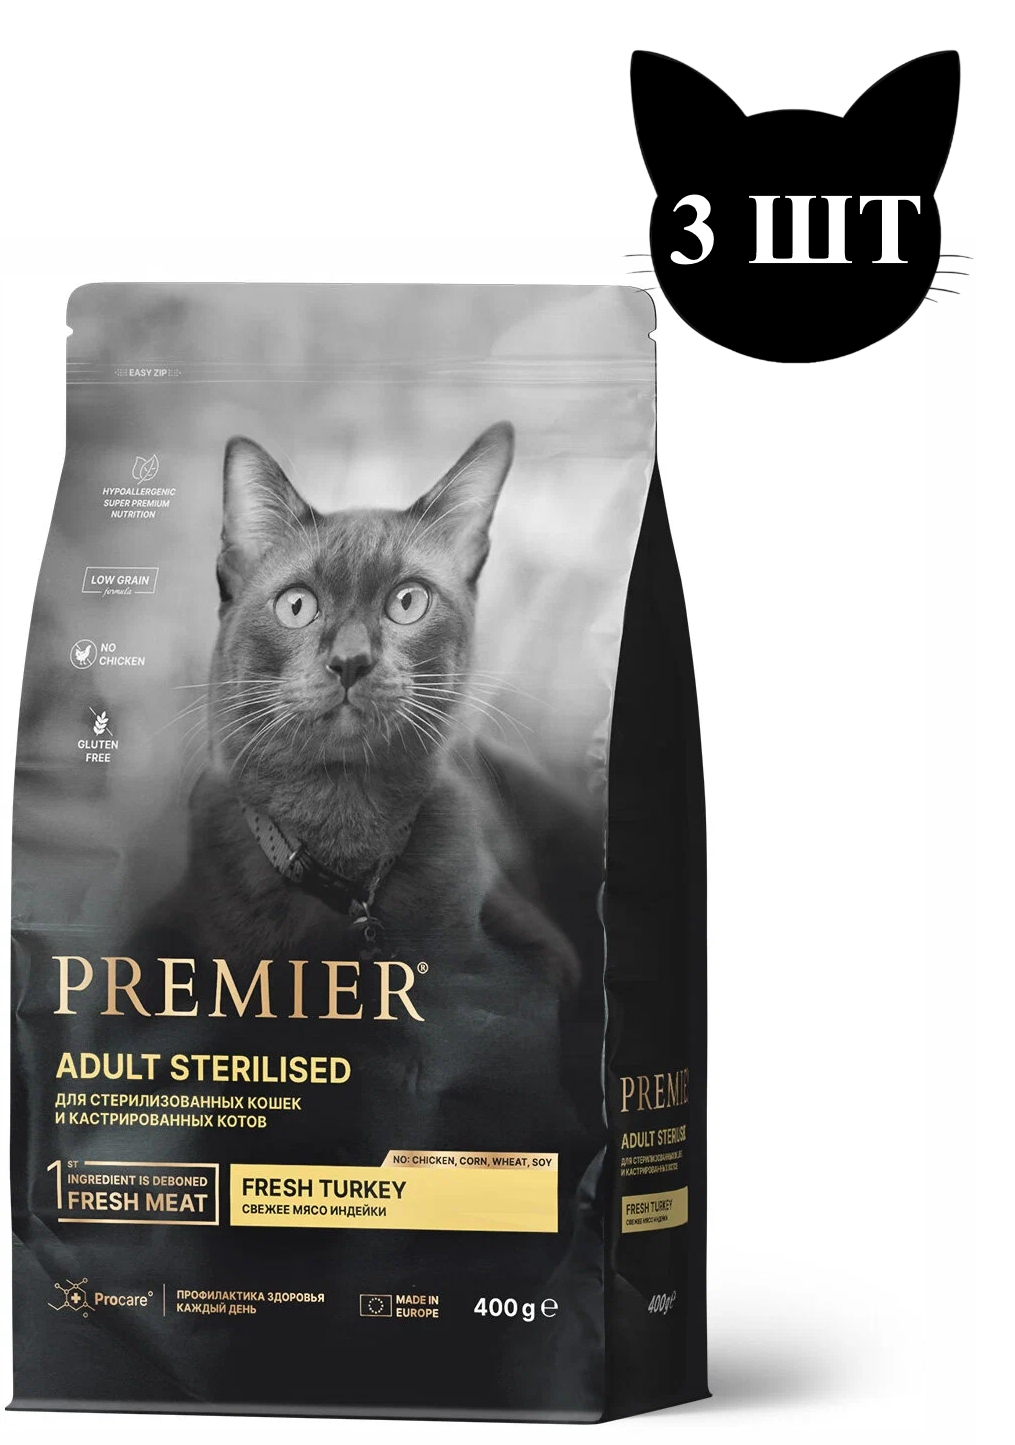 Сухой корм для кошек Premier с индейкой, для стерилизованных, 3шт по 400г